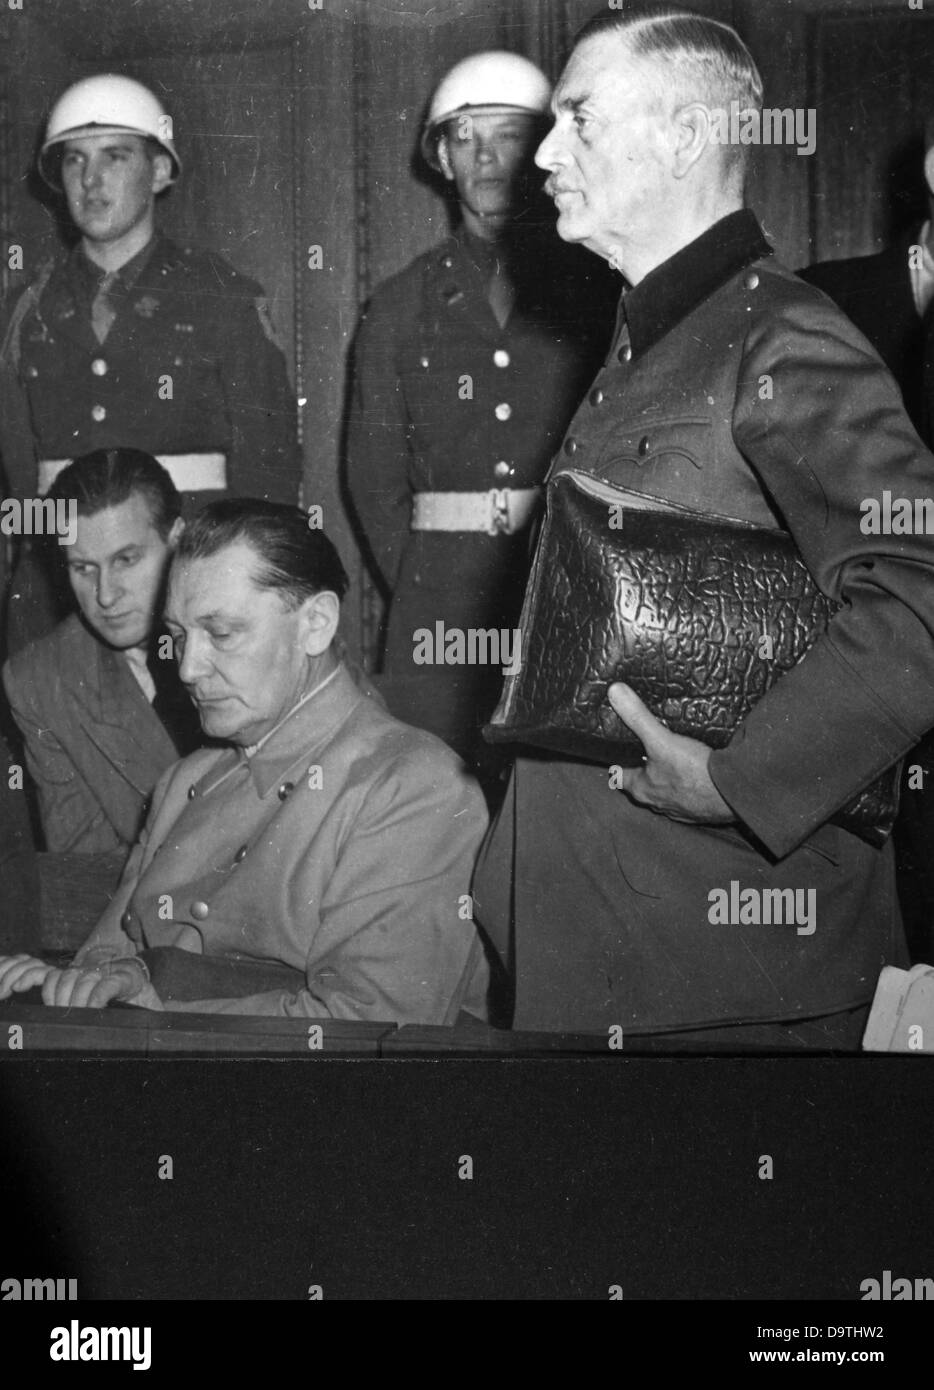 NS-Kriegsverbrecher Hermann Göring und Wilhelm Keitel (stehend) bei den Nürnberger Prozessen 1946 vor der internationalen militärischen Gerichtshof.    Foto: Jewgeni Chaldei Stockfoto